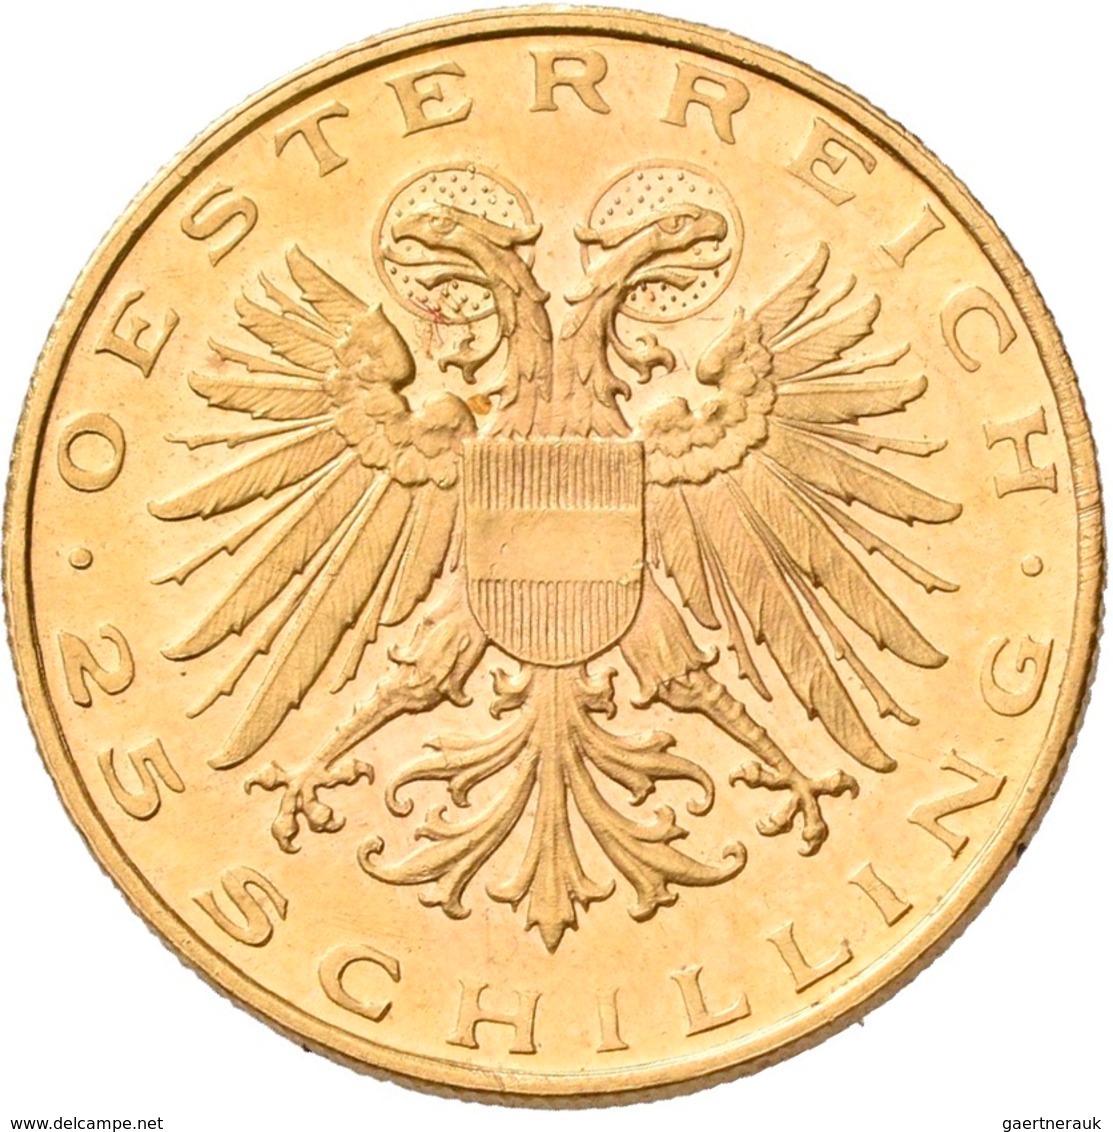 Österreich - Anlagegold: 1. Republik 1918-1938: 25 Schilling 1937 St. Leopold. KM# 2856, Friedberg 5 - Austria